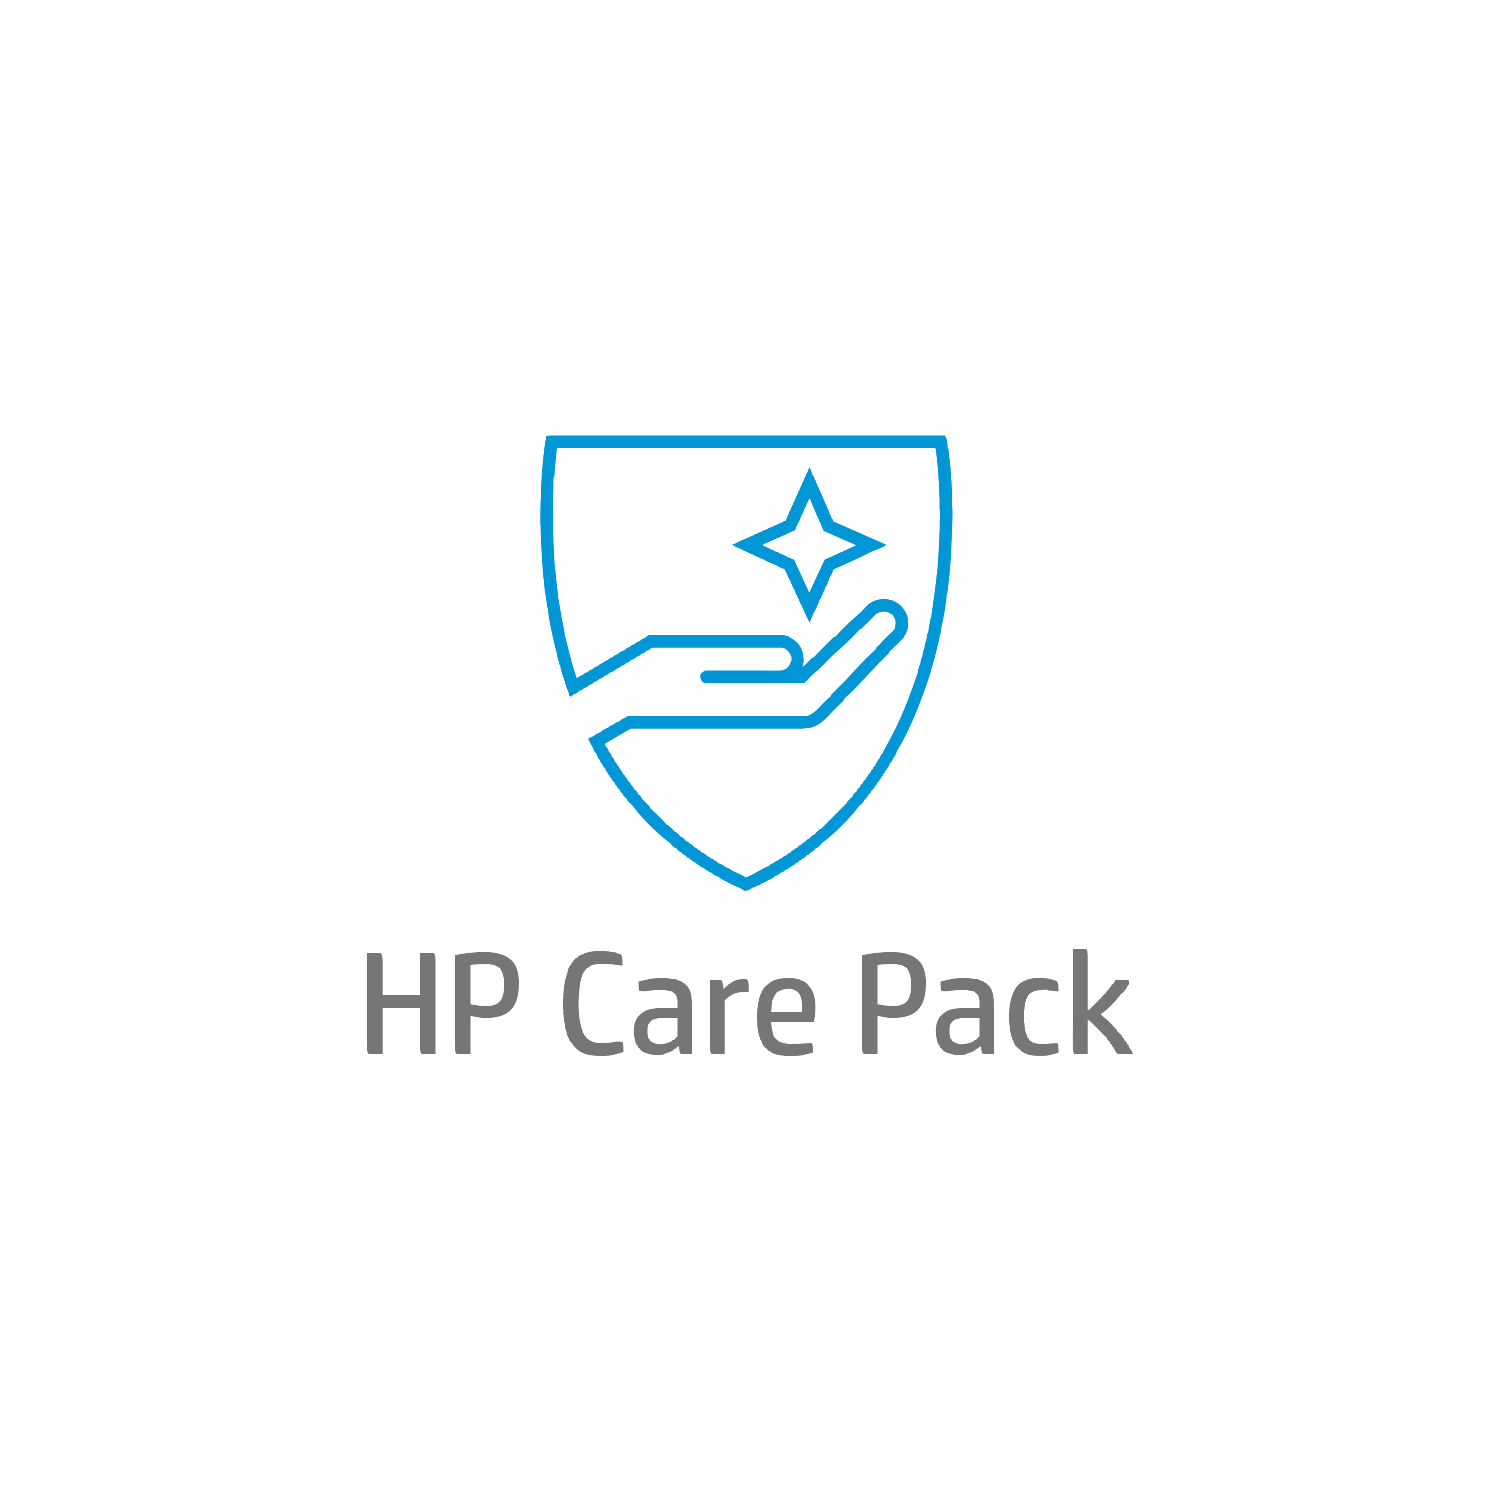 Bild von HP Care 4 Jahre Hardware-Support für Mobile Workstations - Externe Reparatur - Außerhalb des Kundenstandorts - Unter Garantie - Standardarbeitstage - 9 Stunden - 4 Jahre - Reparatur innerhalb von 3–7 Werktagen